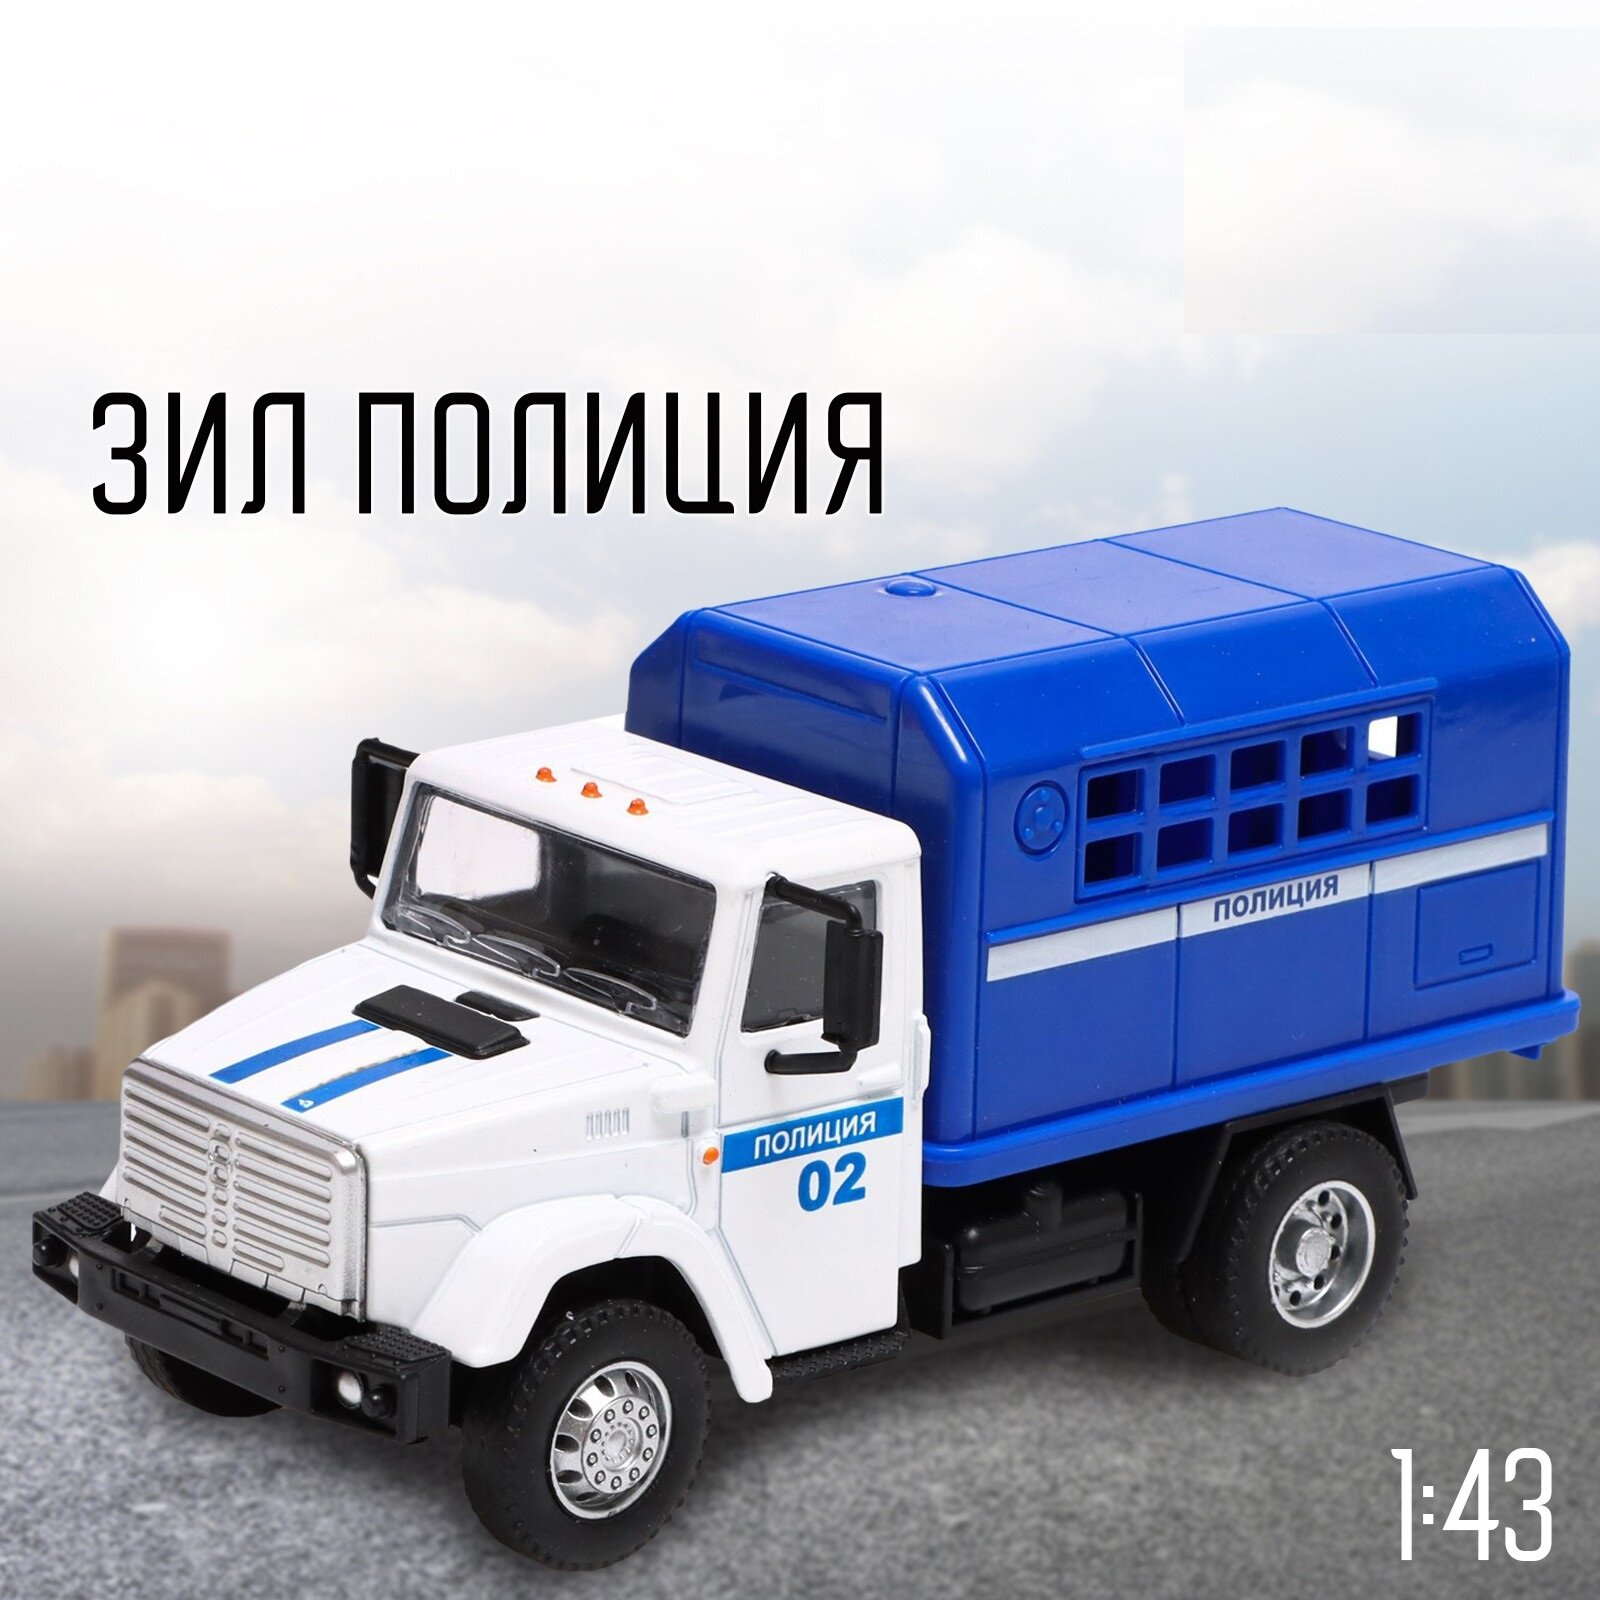 Грузовик Автоград, металлический "ЗИЛ: Полиция", масштаб 1:43, подвижные детали кузова